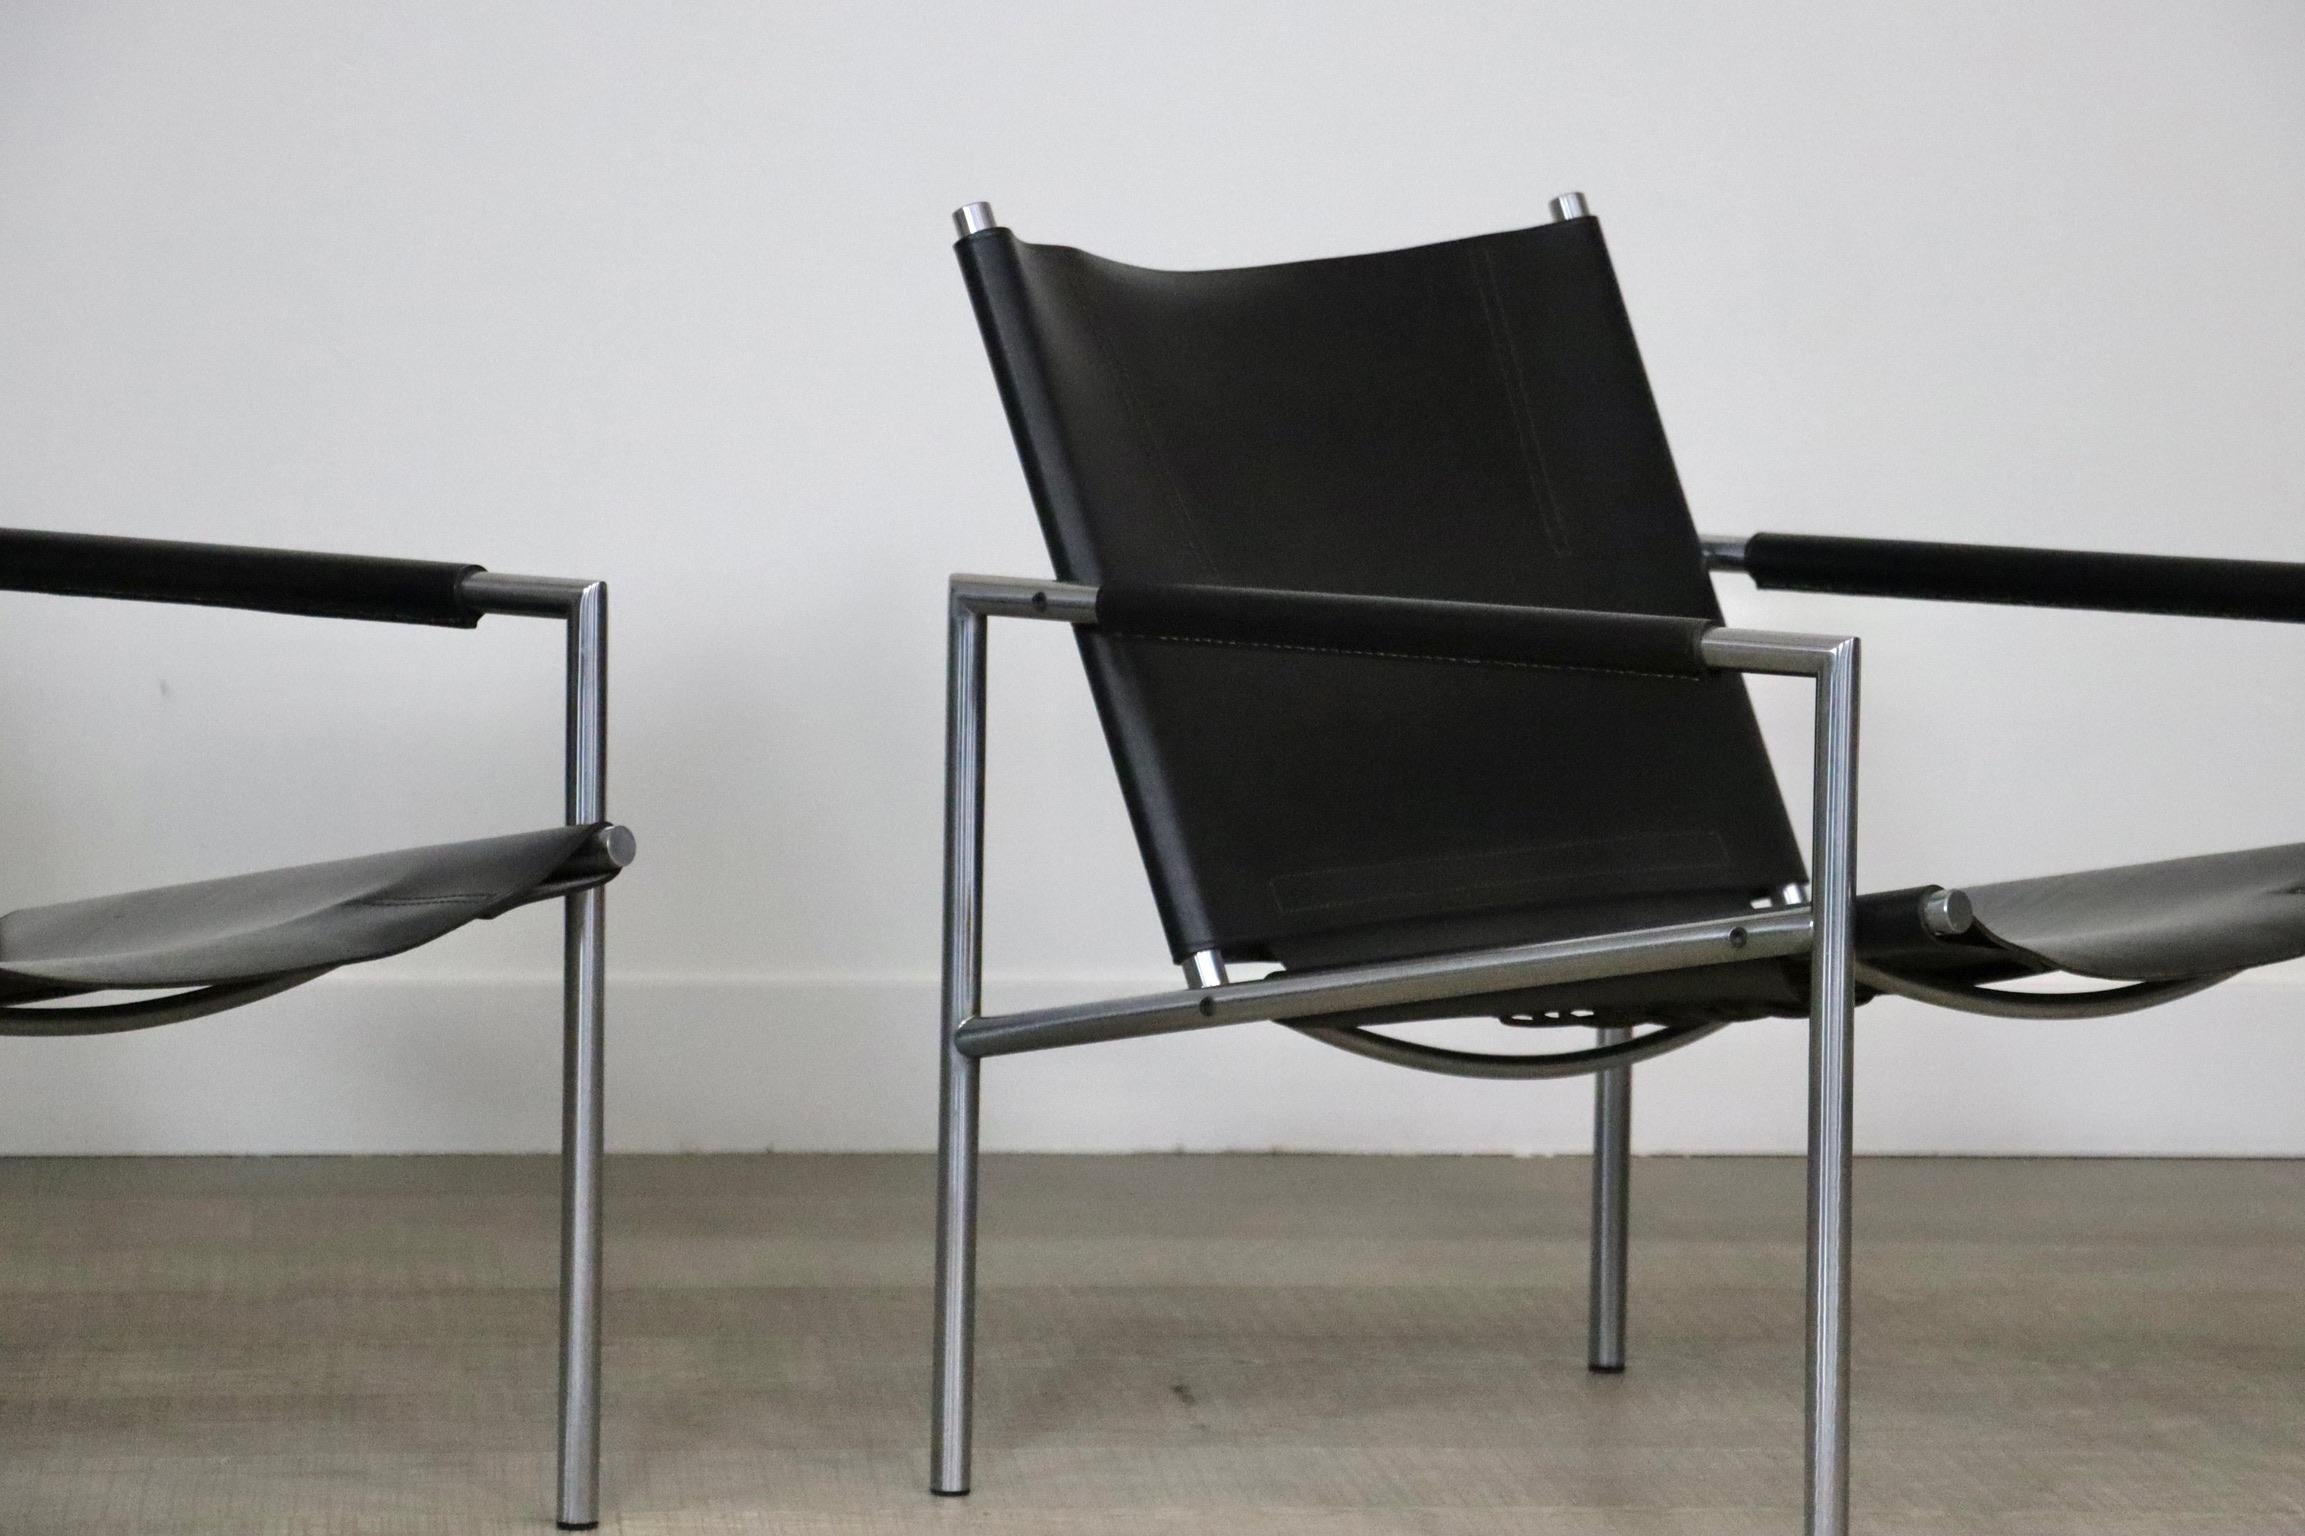 Belle paire de fauteuils SZ02 de Martin Visser pour 'T Spectrum, Pays-Bas, 1965. Ces chaises ont une structure tubulaire en acier brossé et des sièges et accoudoirs en cuir noir de selle très épais. Ce design minimaliste rehaussera n'importe quel